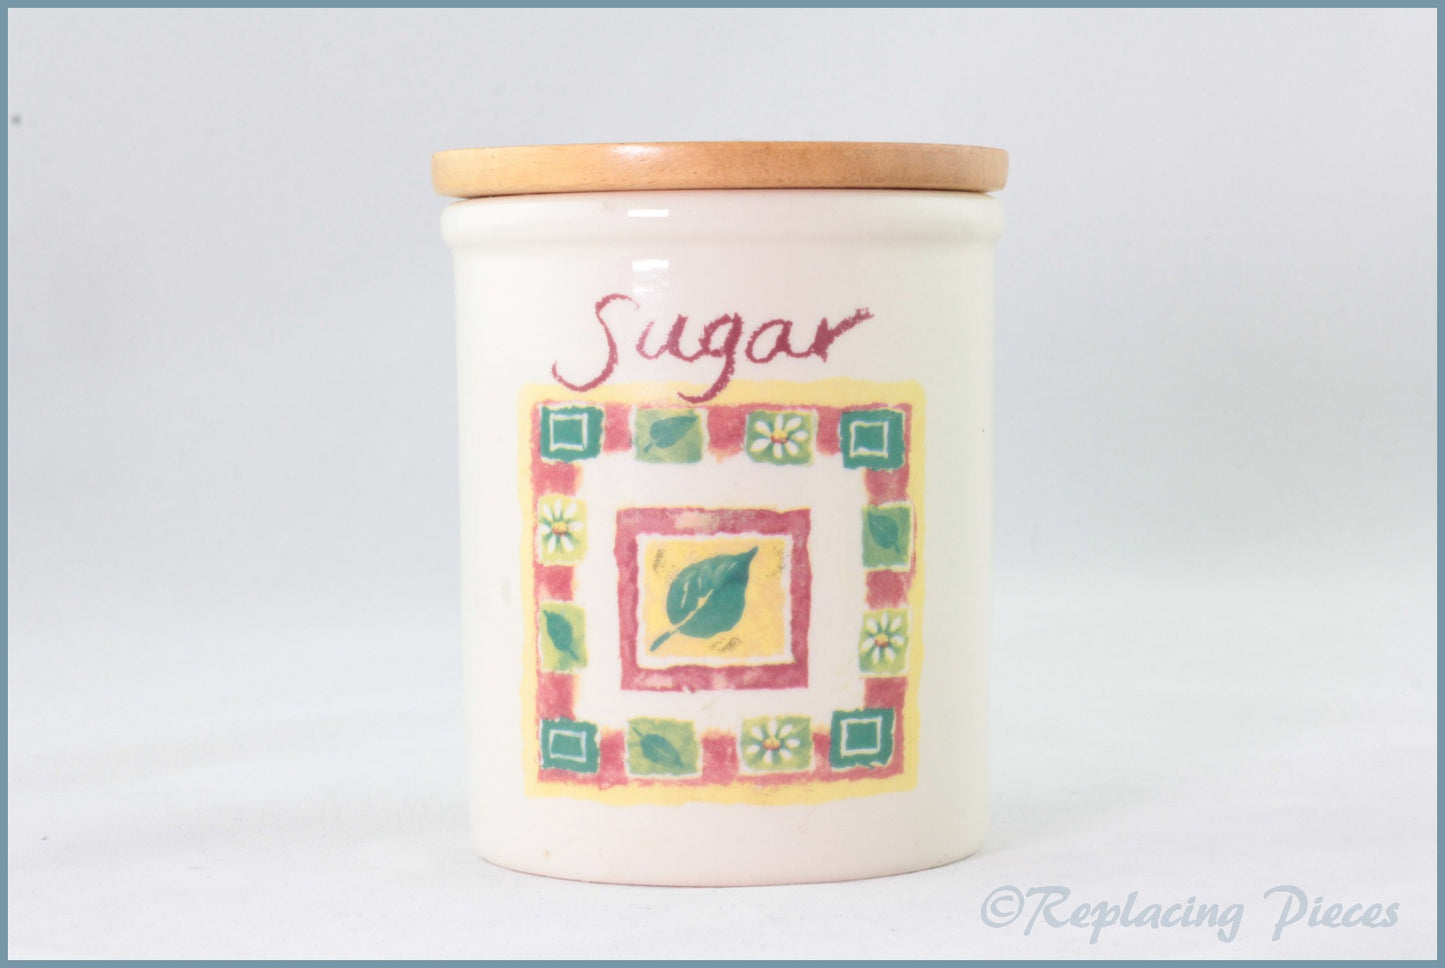 Cloverleaf - Unknown 1 - Storage Jar (Sugar)